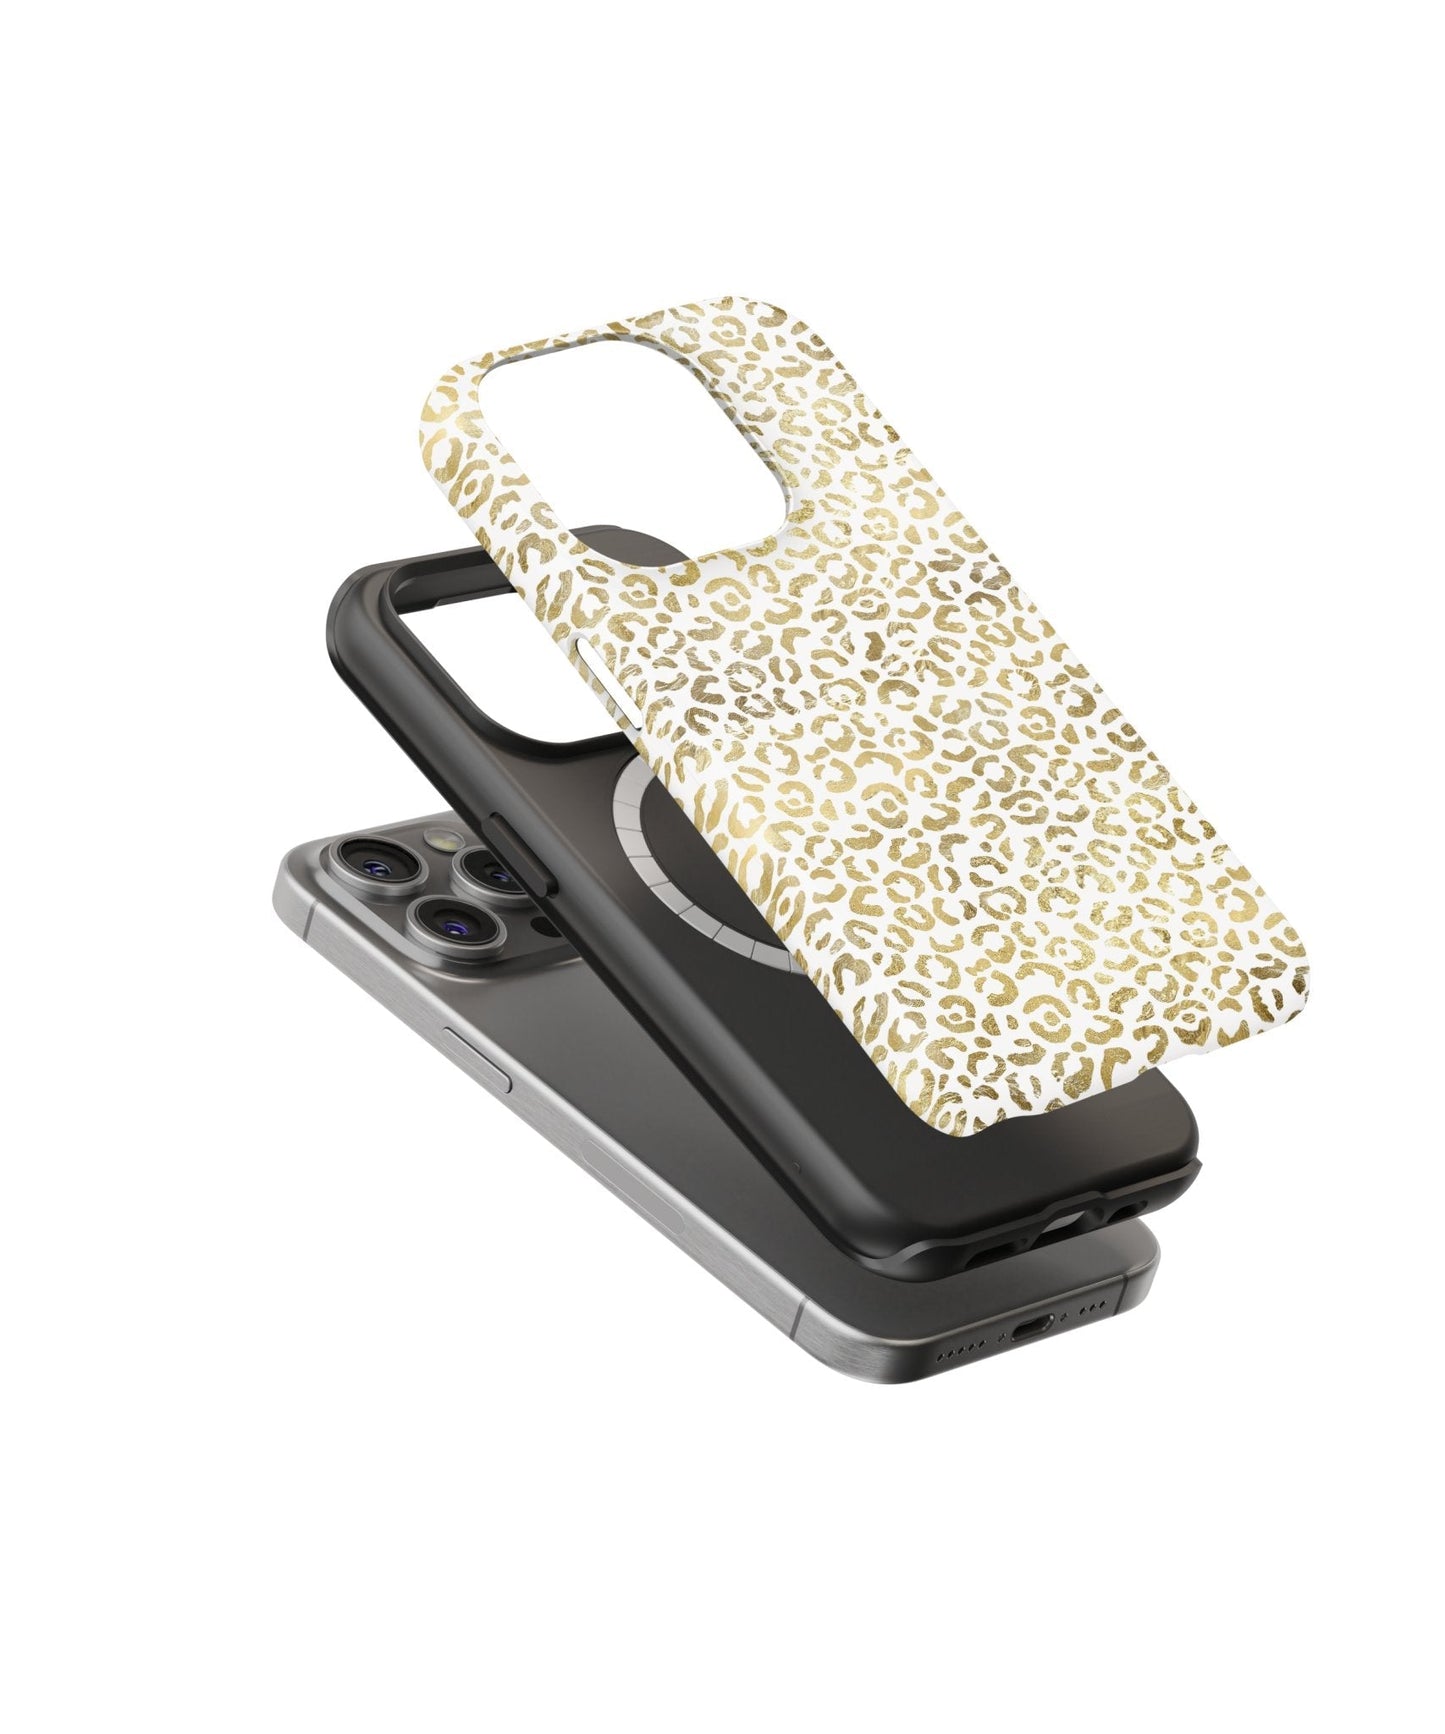 Golden Leopard Grace - iPhone Case